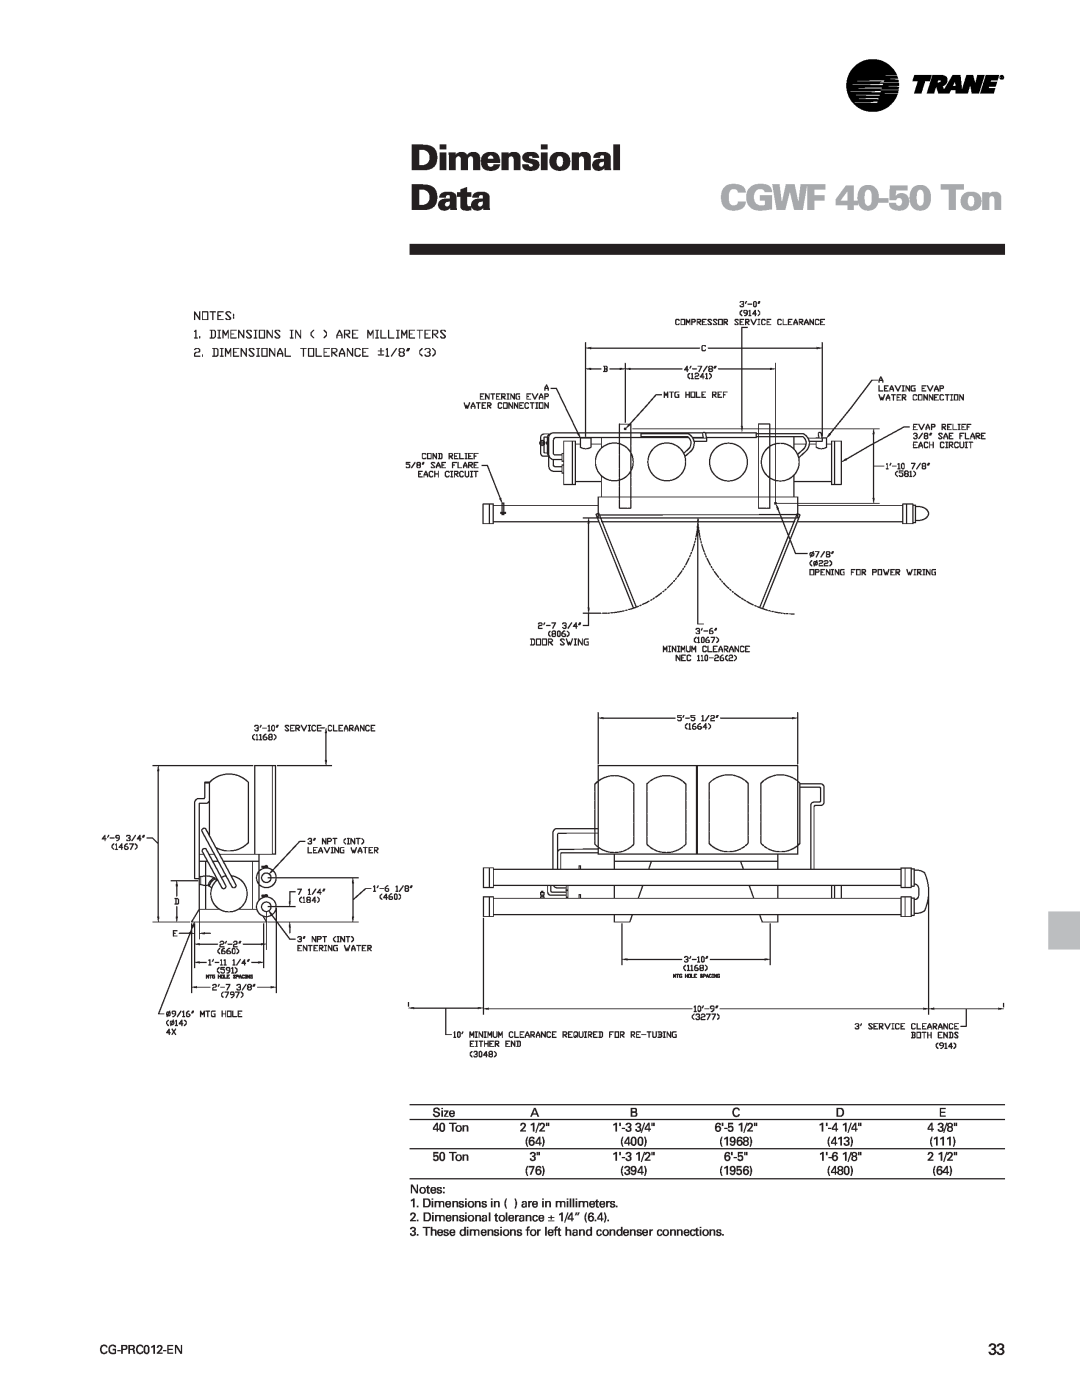 Trane CCAF manual CGWF 40-50 Ton, Dimensional, Data 